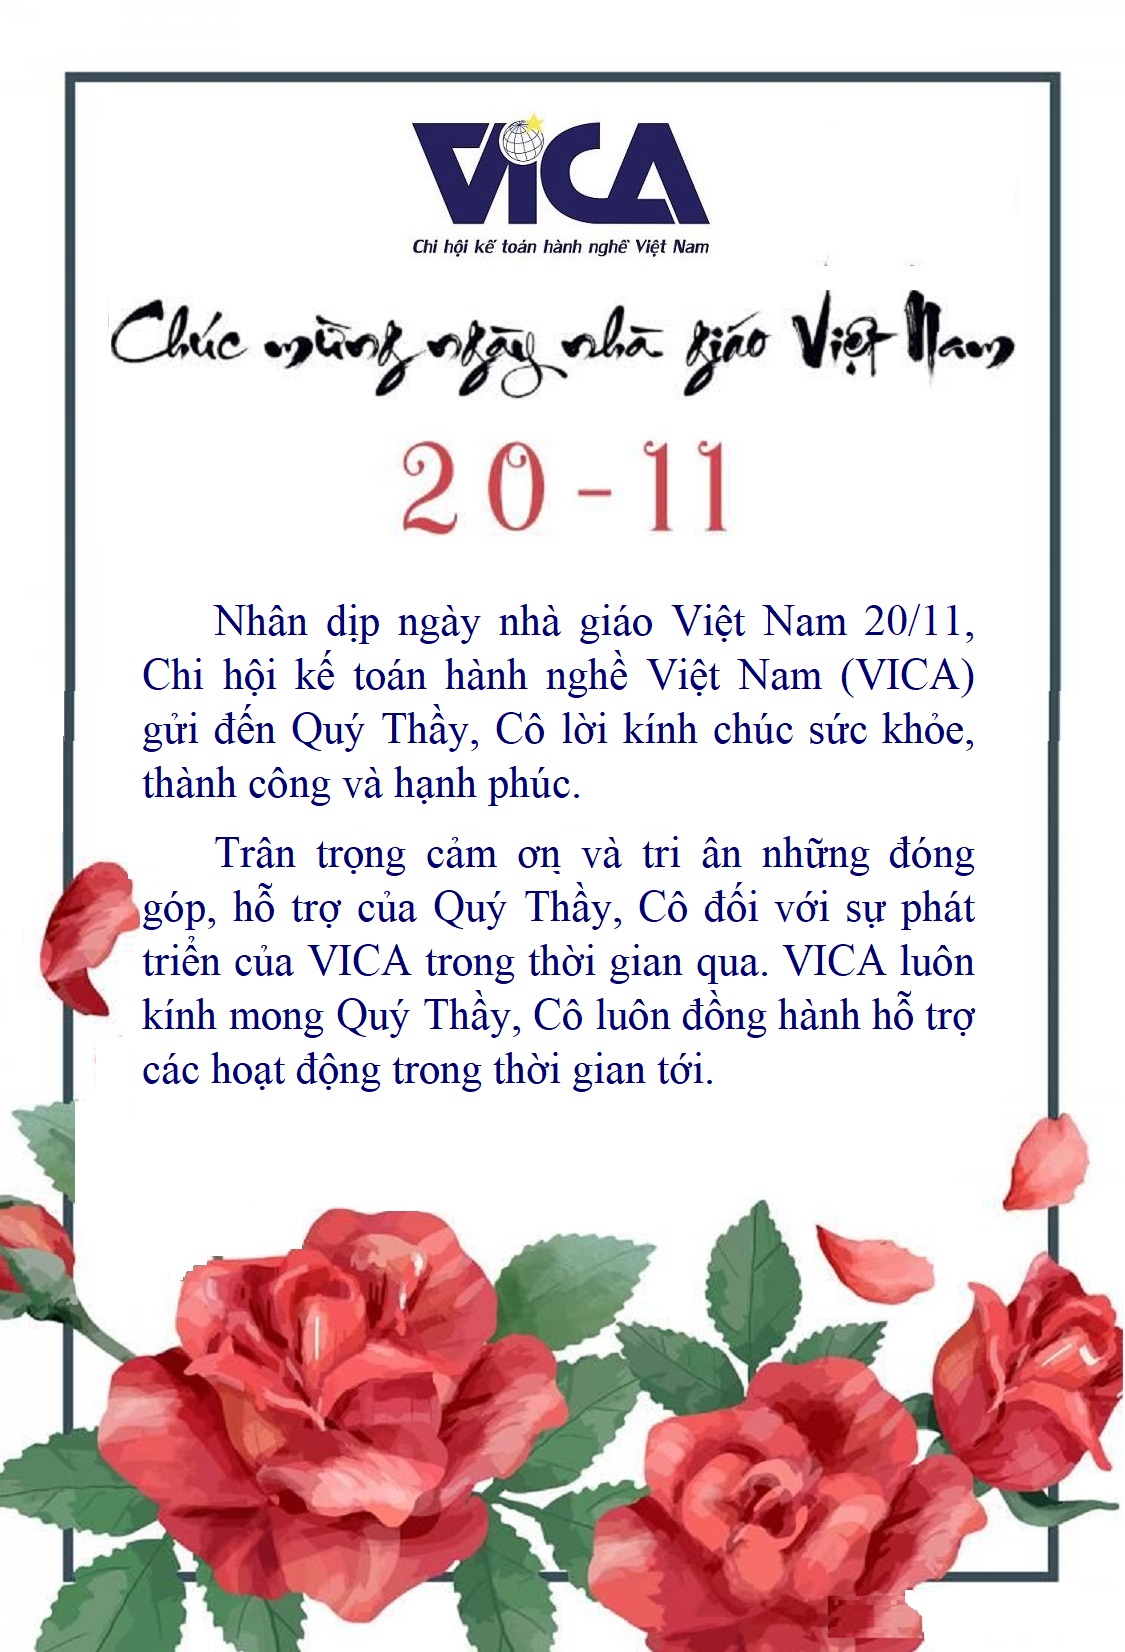 VICA-Chúc mừng ngày Nhà giáo Việt Nam 20-11-2021